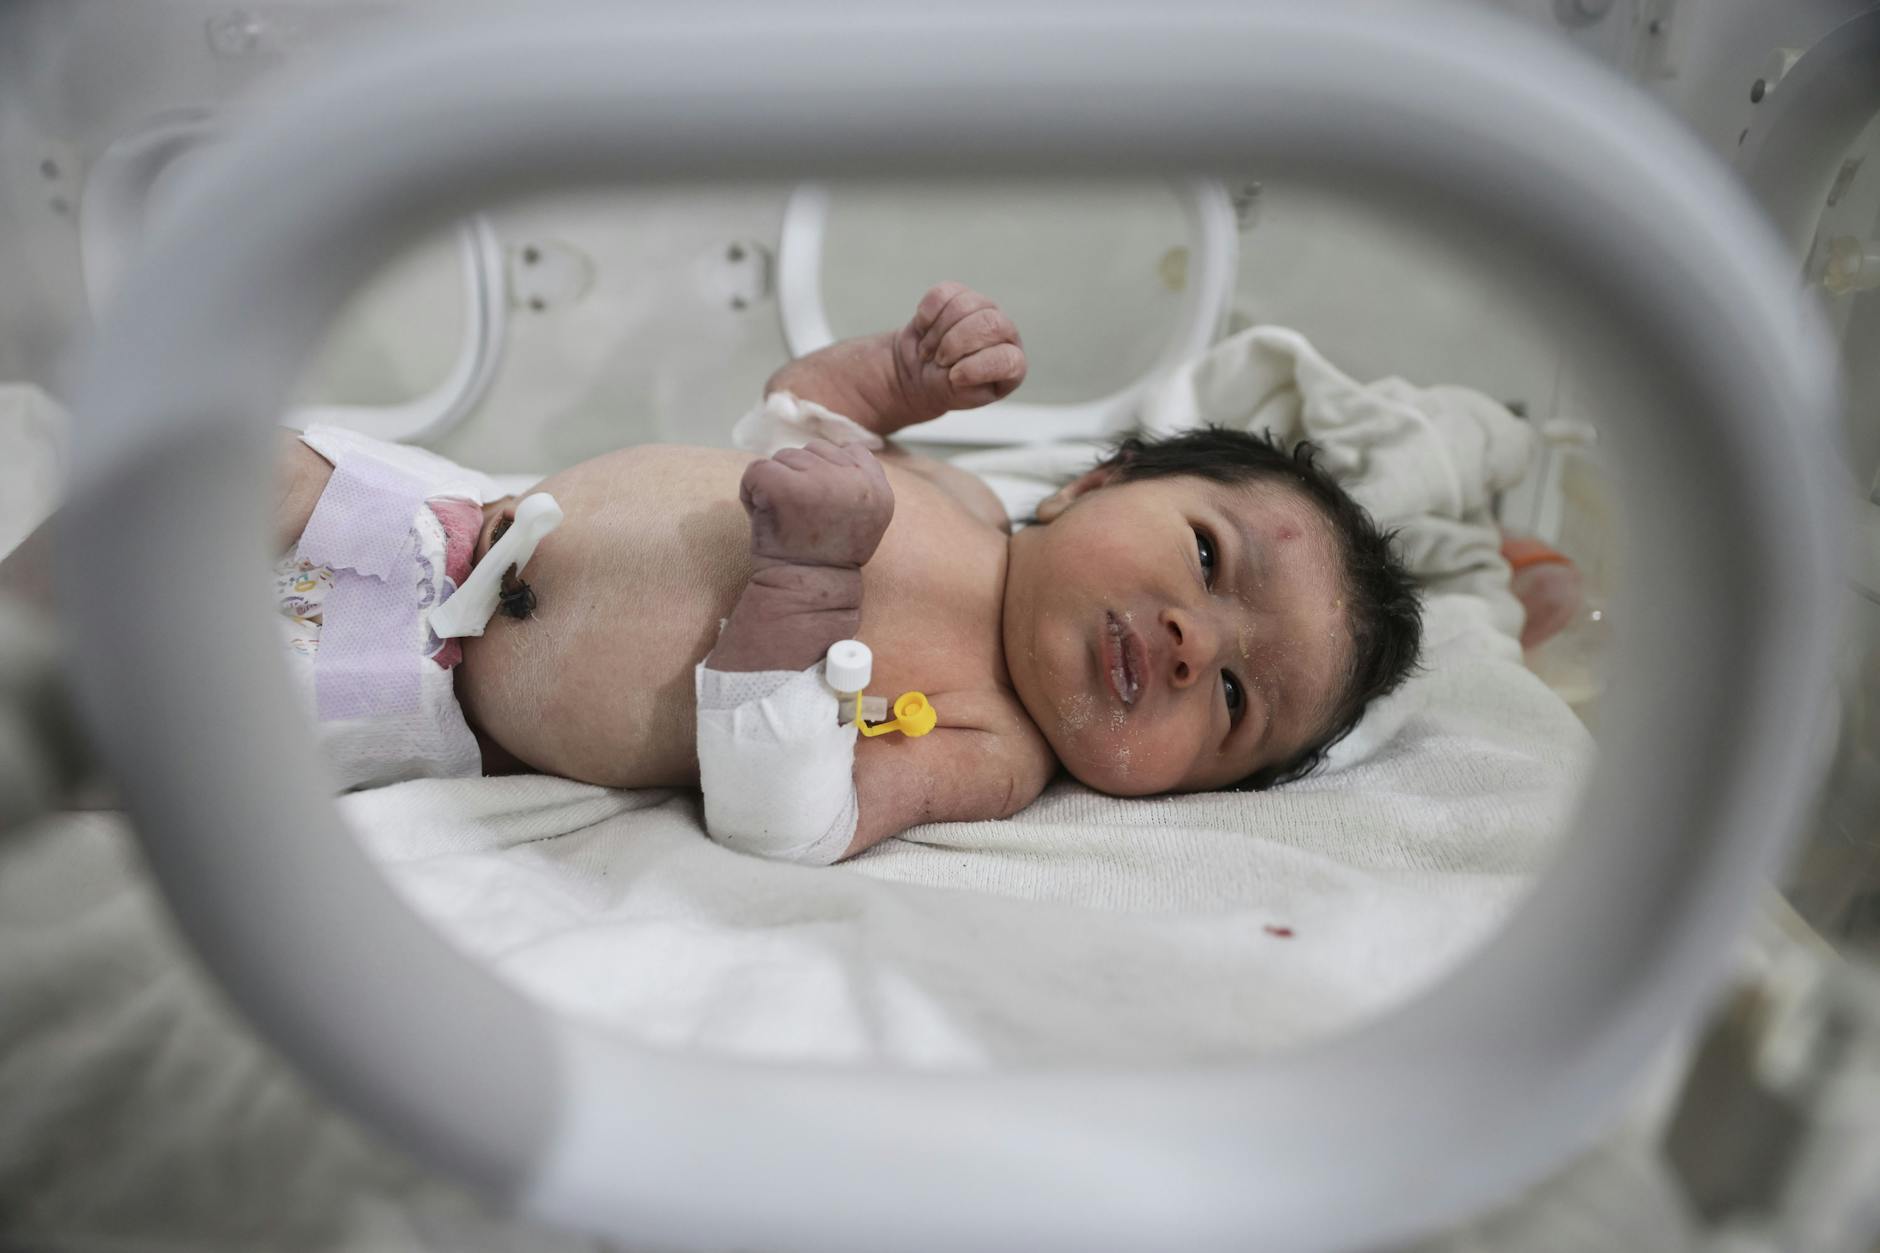 Aja, das sogenannte „Wunderbaby“, wurde nach dem verheerenden Erdbeben an der türkisch-syrischen Grenze unter einem zerstörten Haus gerettet. Vermutet wird, dass die Mutter kurz nach der Geburt starb.